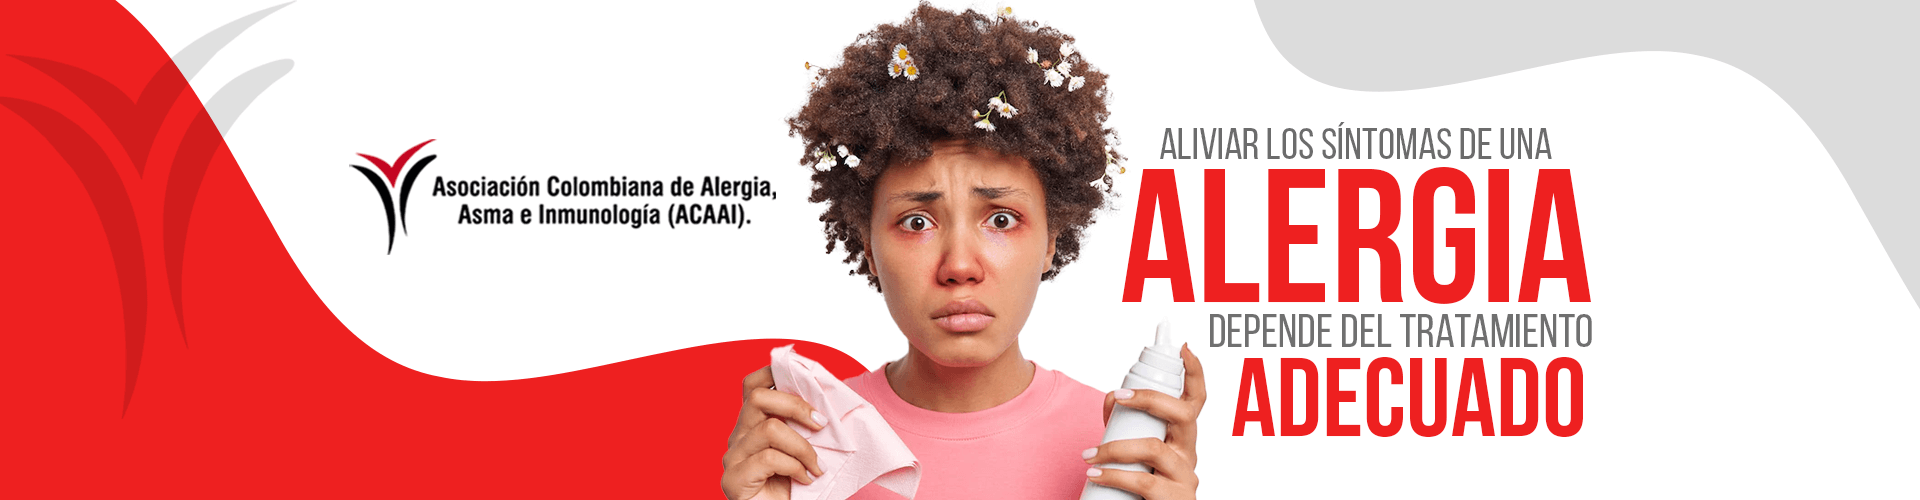 Acaai - Asociacion Colombiana de Alergia Asma e Inmunologia